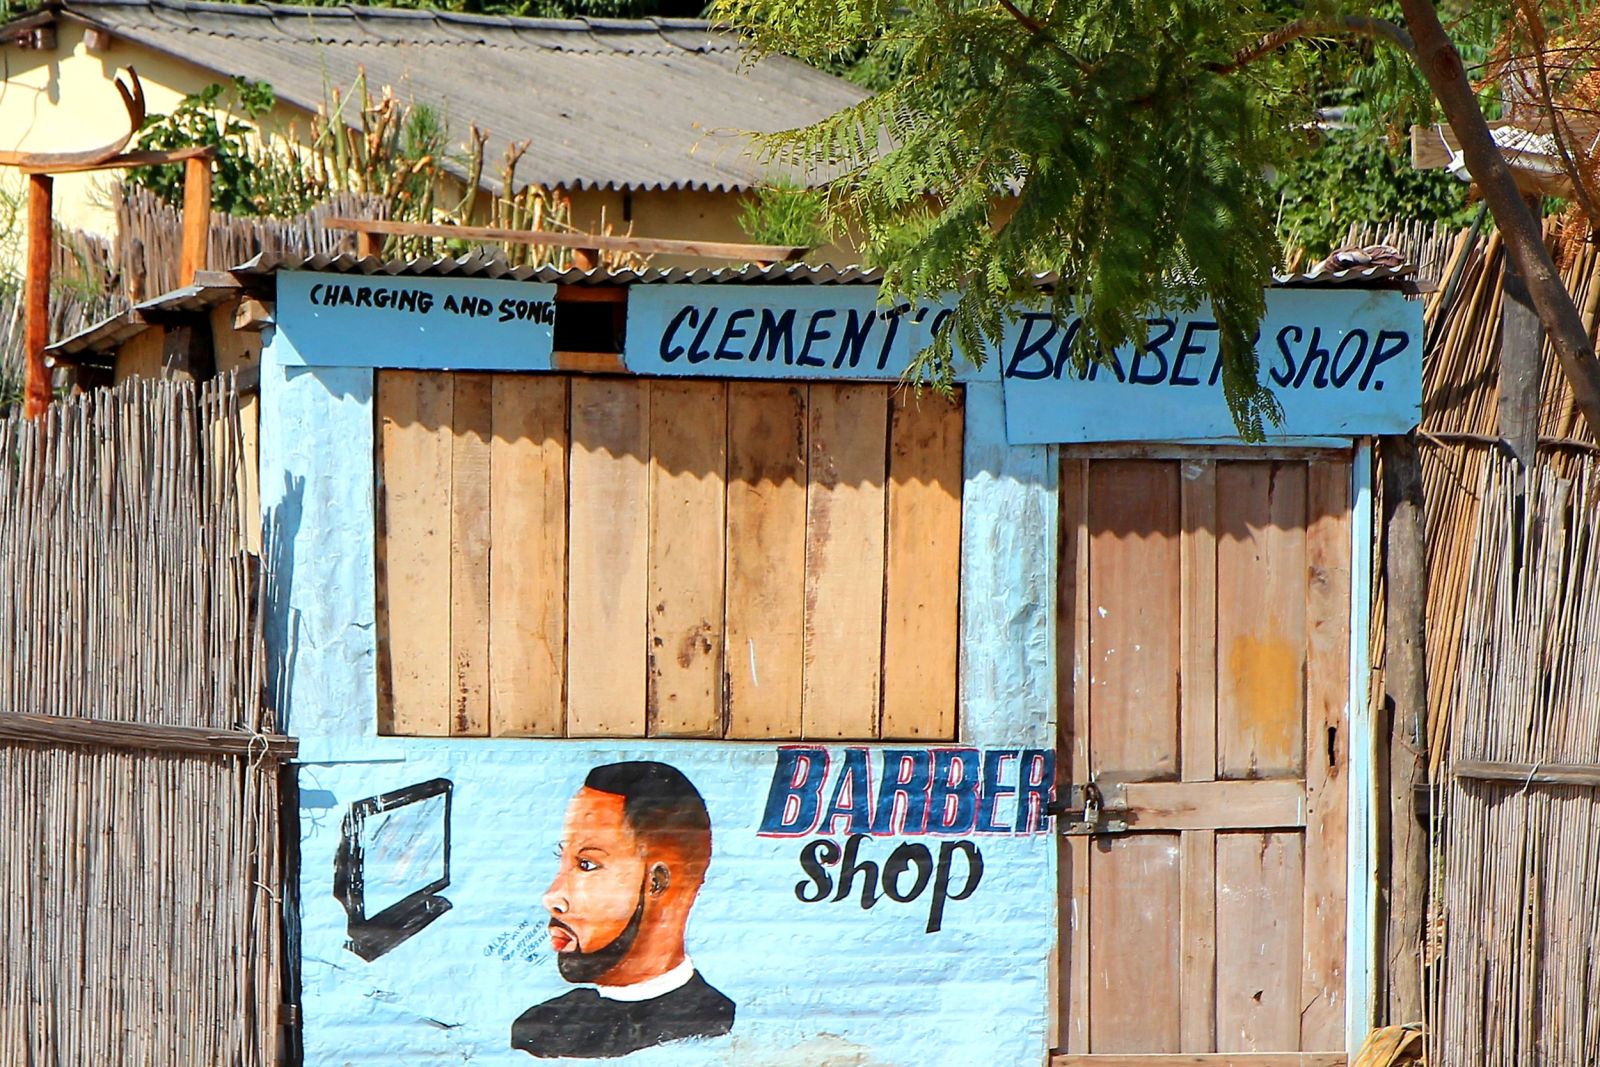 Praktischerweise kann man in diesem Friseurladen in Mongu auch seine Mobilgeräte gleich aufladen – nur nicht an unserem Ankunftstag.